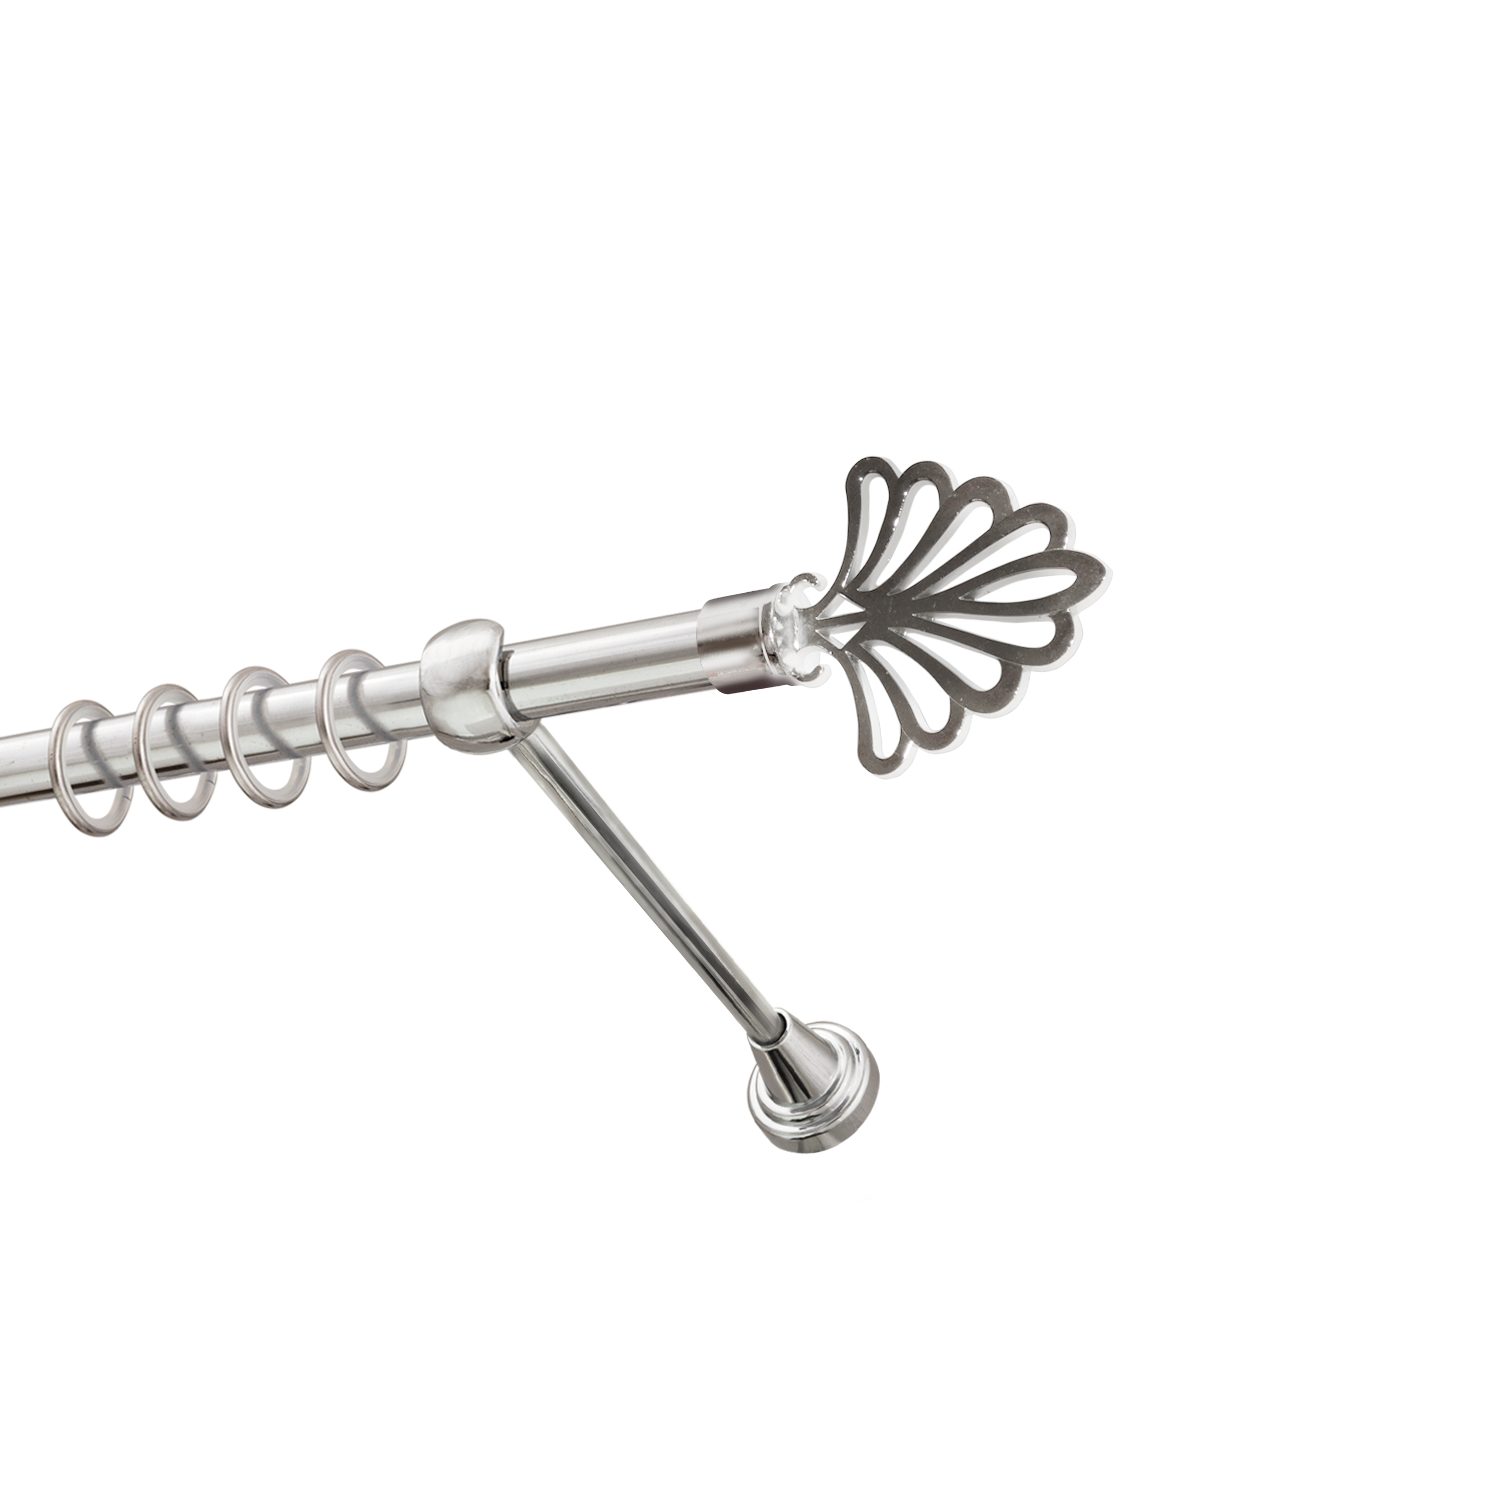 Металлический карниз для штор Бутик, однорядный 16 мм, серебро, гладкая штанга, длина 300 см - фото Wikidecor.ru